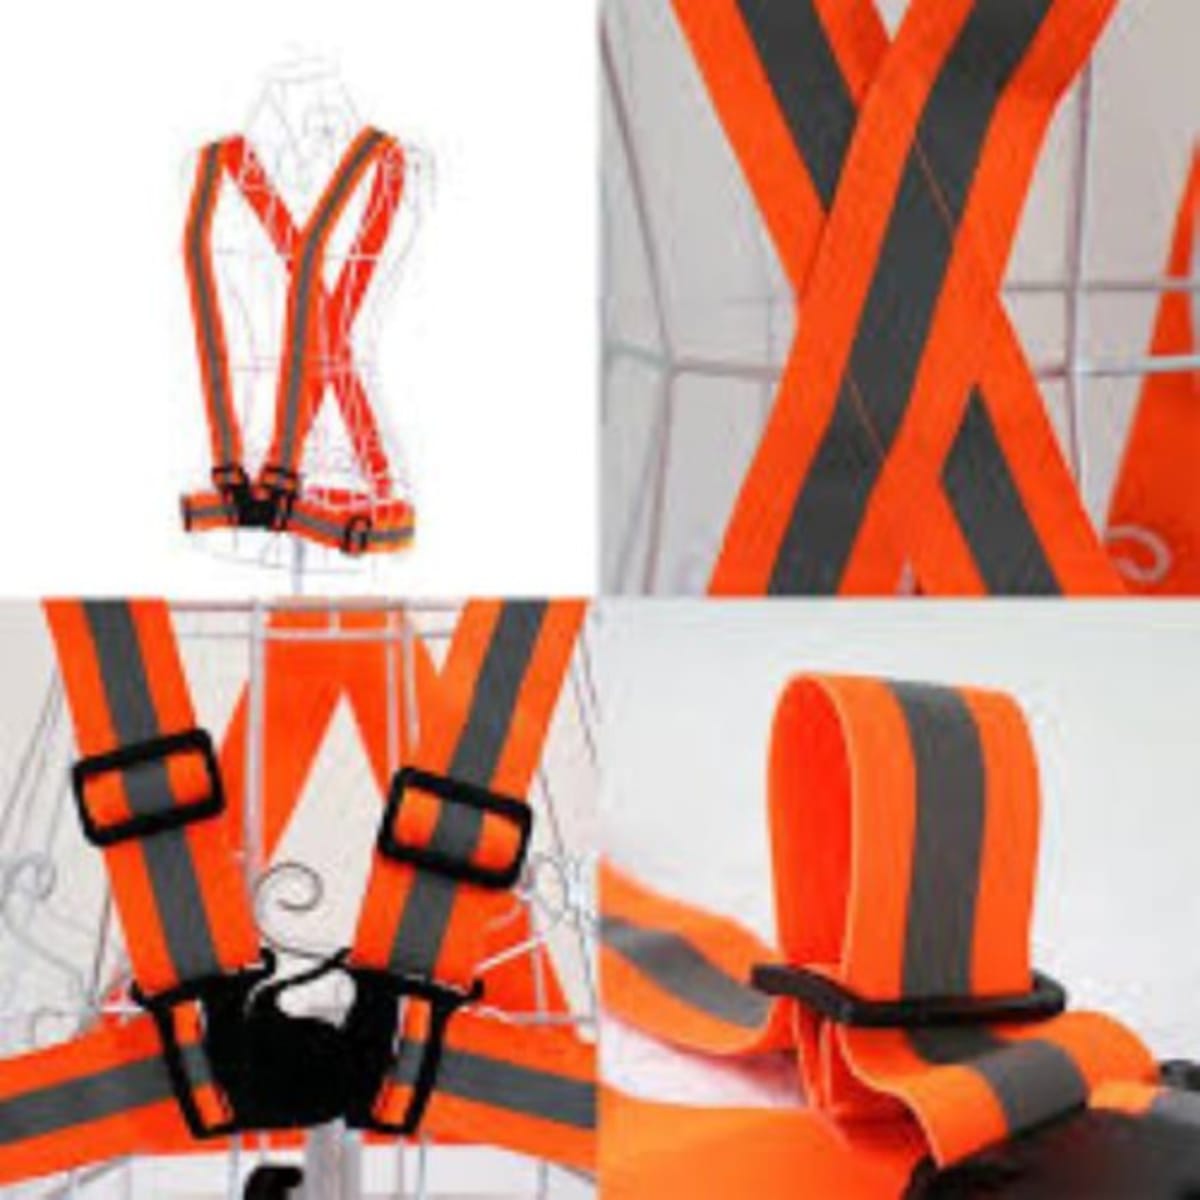 Safety Elastic Reflective Vest Belt - Orange